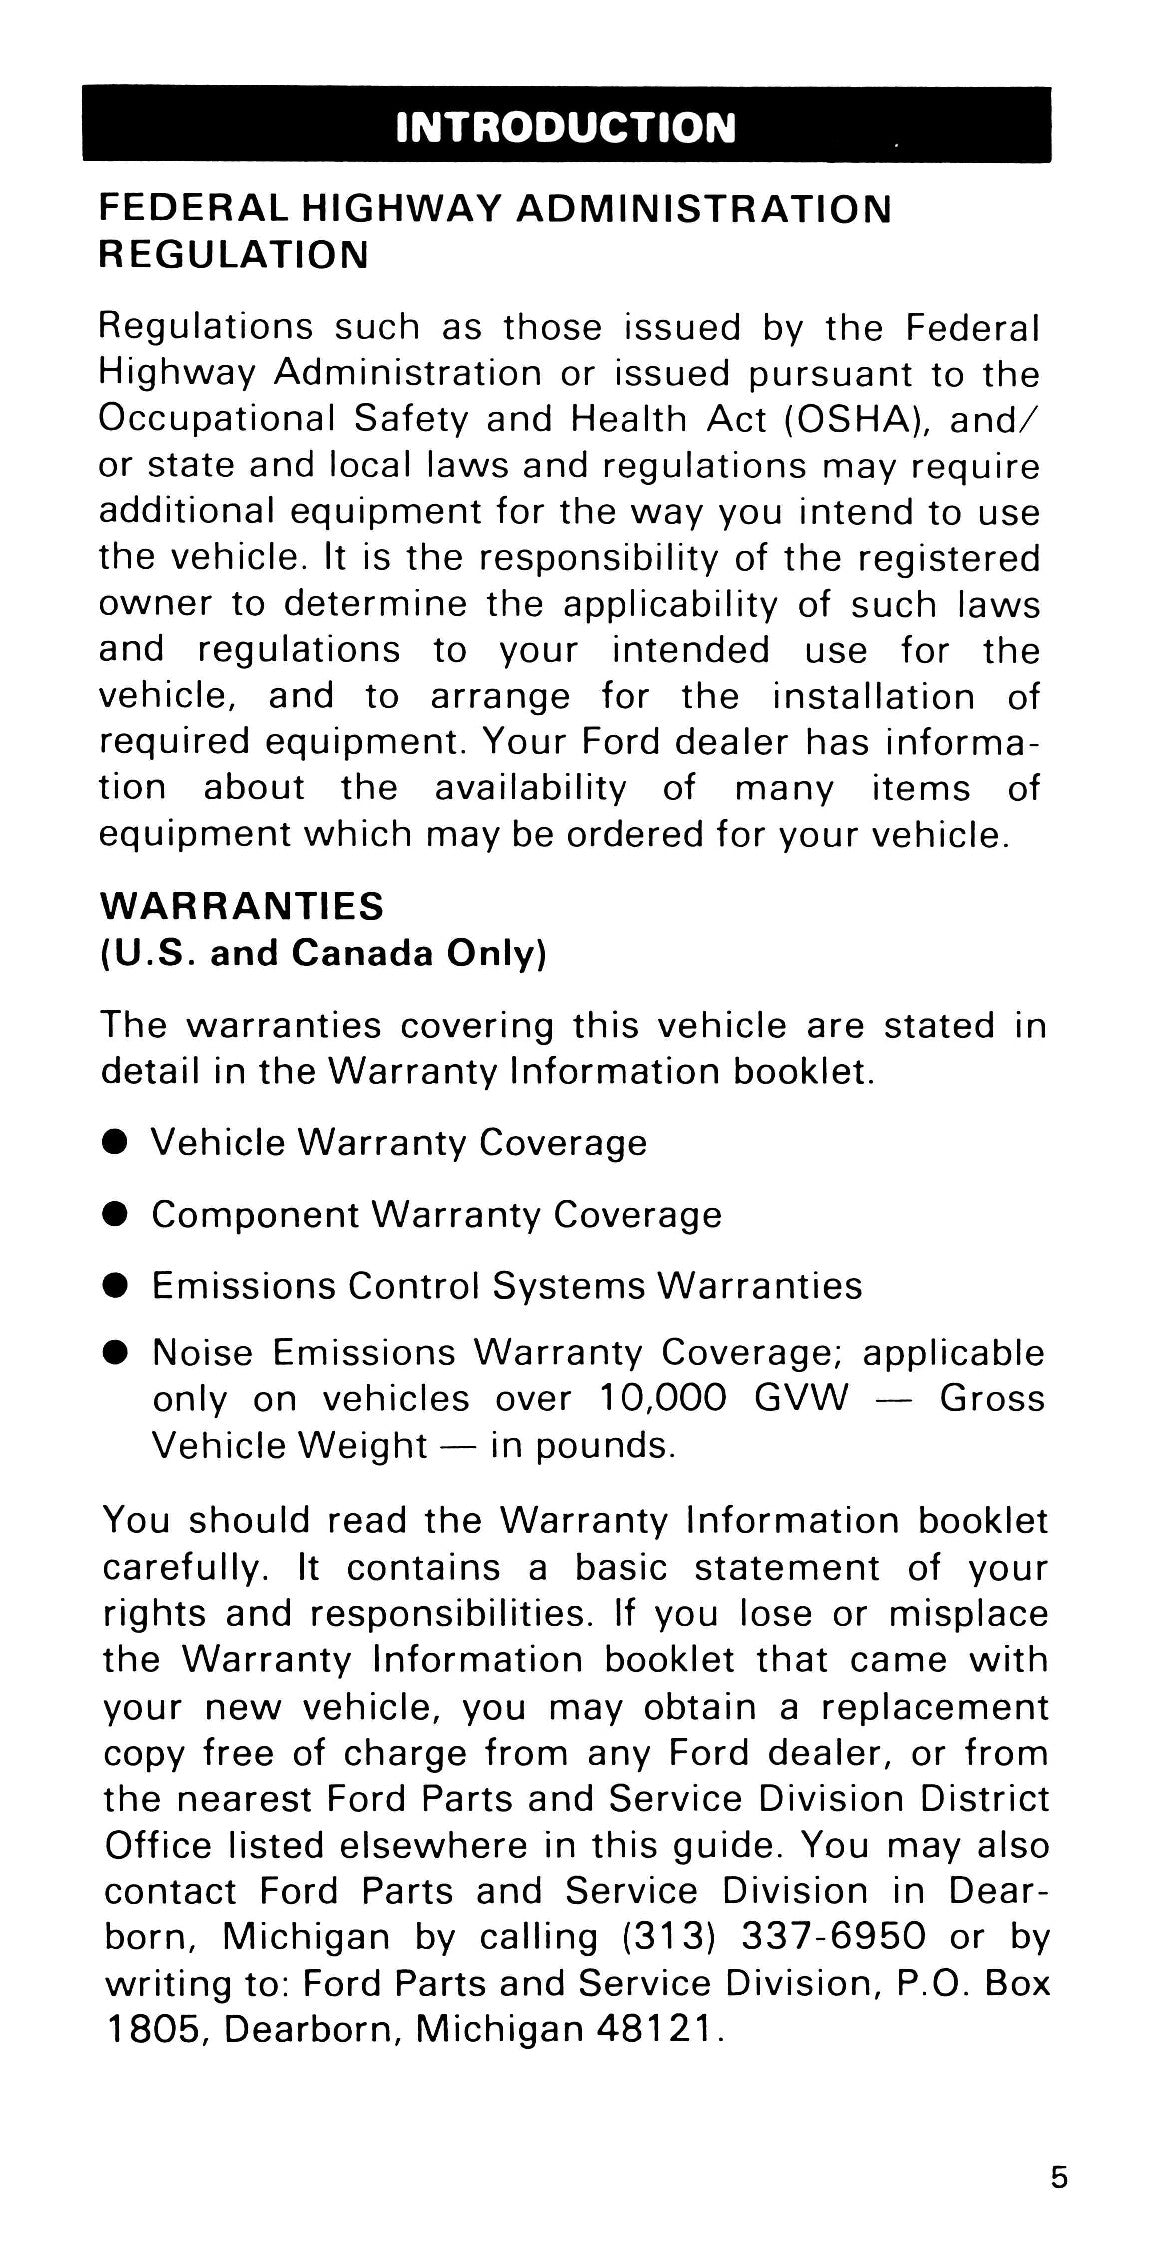 1985 Ford Medium Duty / 600 / 700 / 7000 Gebruikershandleiding | Engels